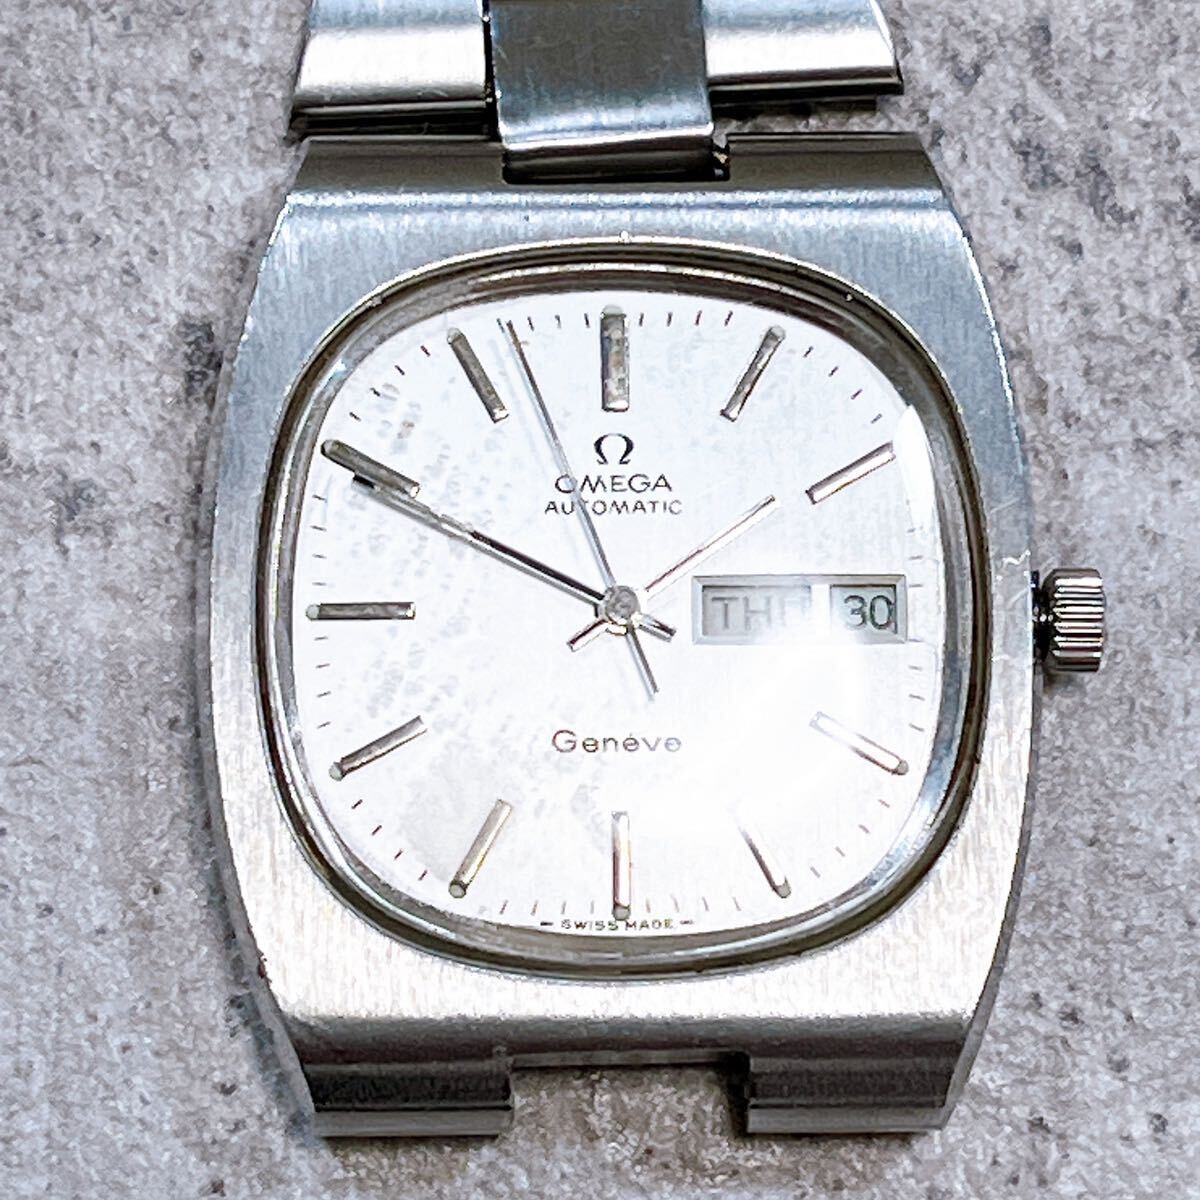 70s OMEGA オメガ ジュネーブ 自動巻き TVスクリーン デイデイト AT アンティーク メンズ 腕時計 動作未確認 